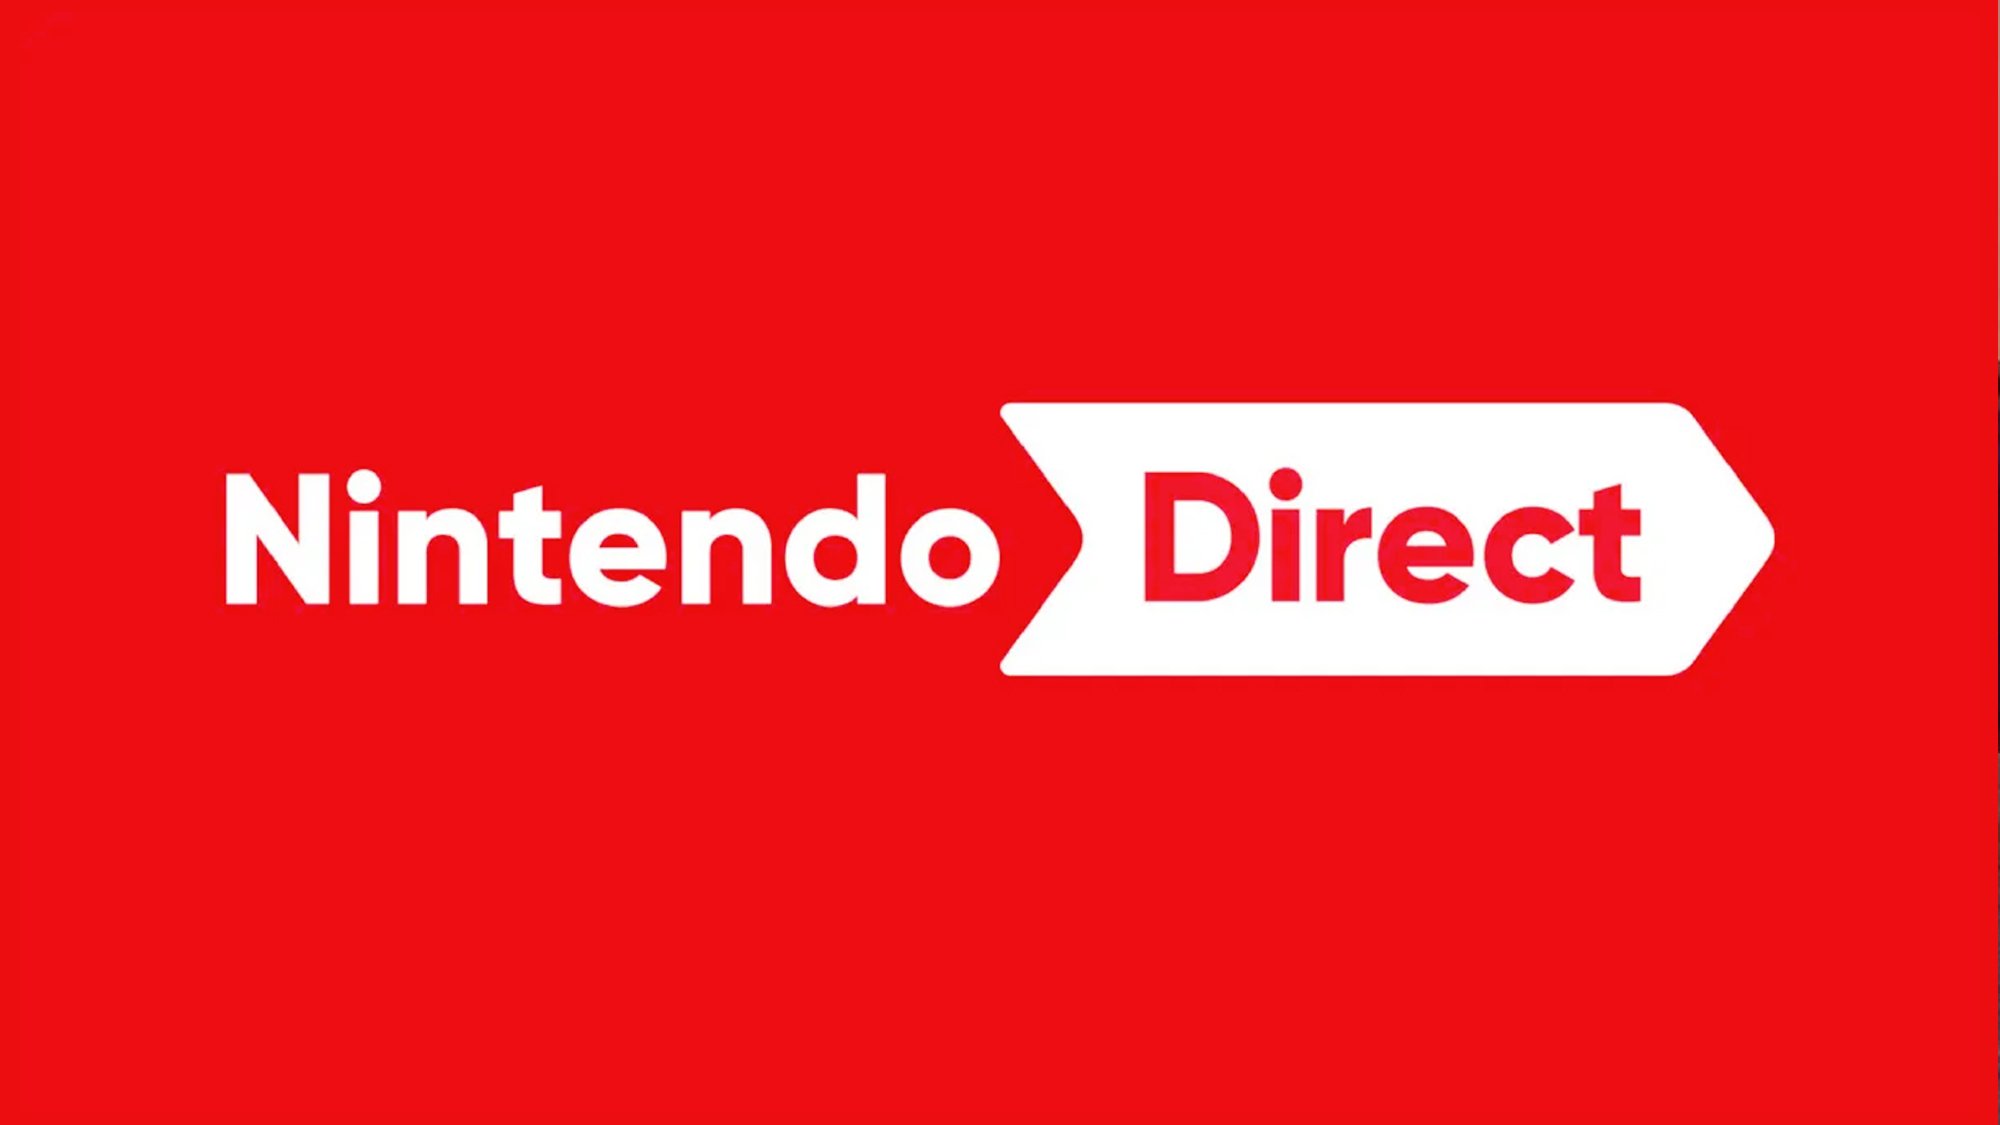 Nintendo Direct : l'évènement majeur refait parler de lui, ça se confirme ?